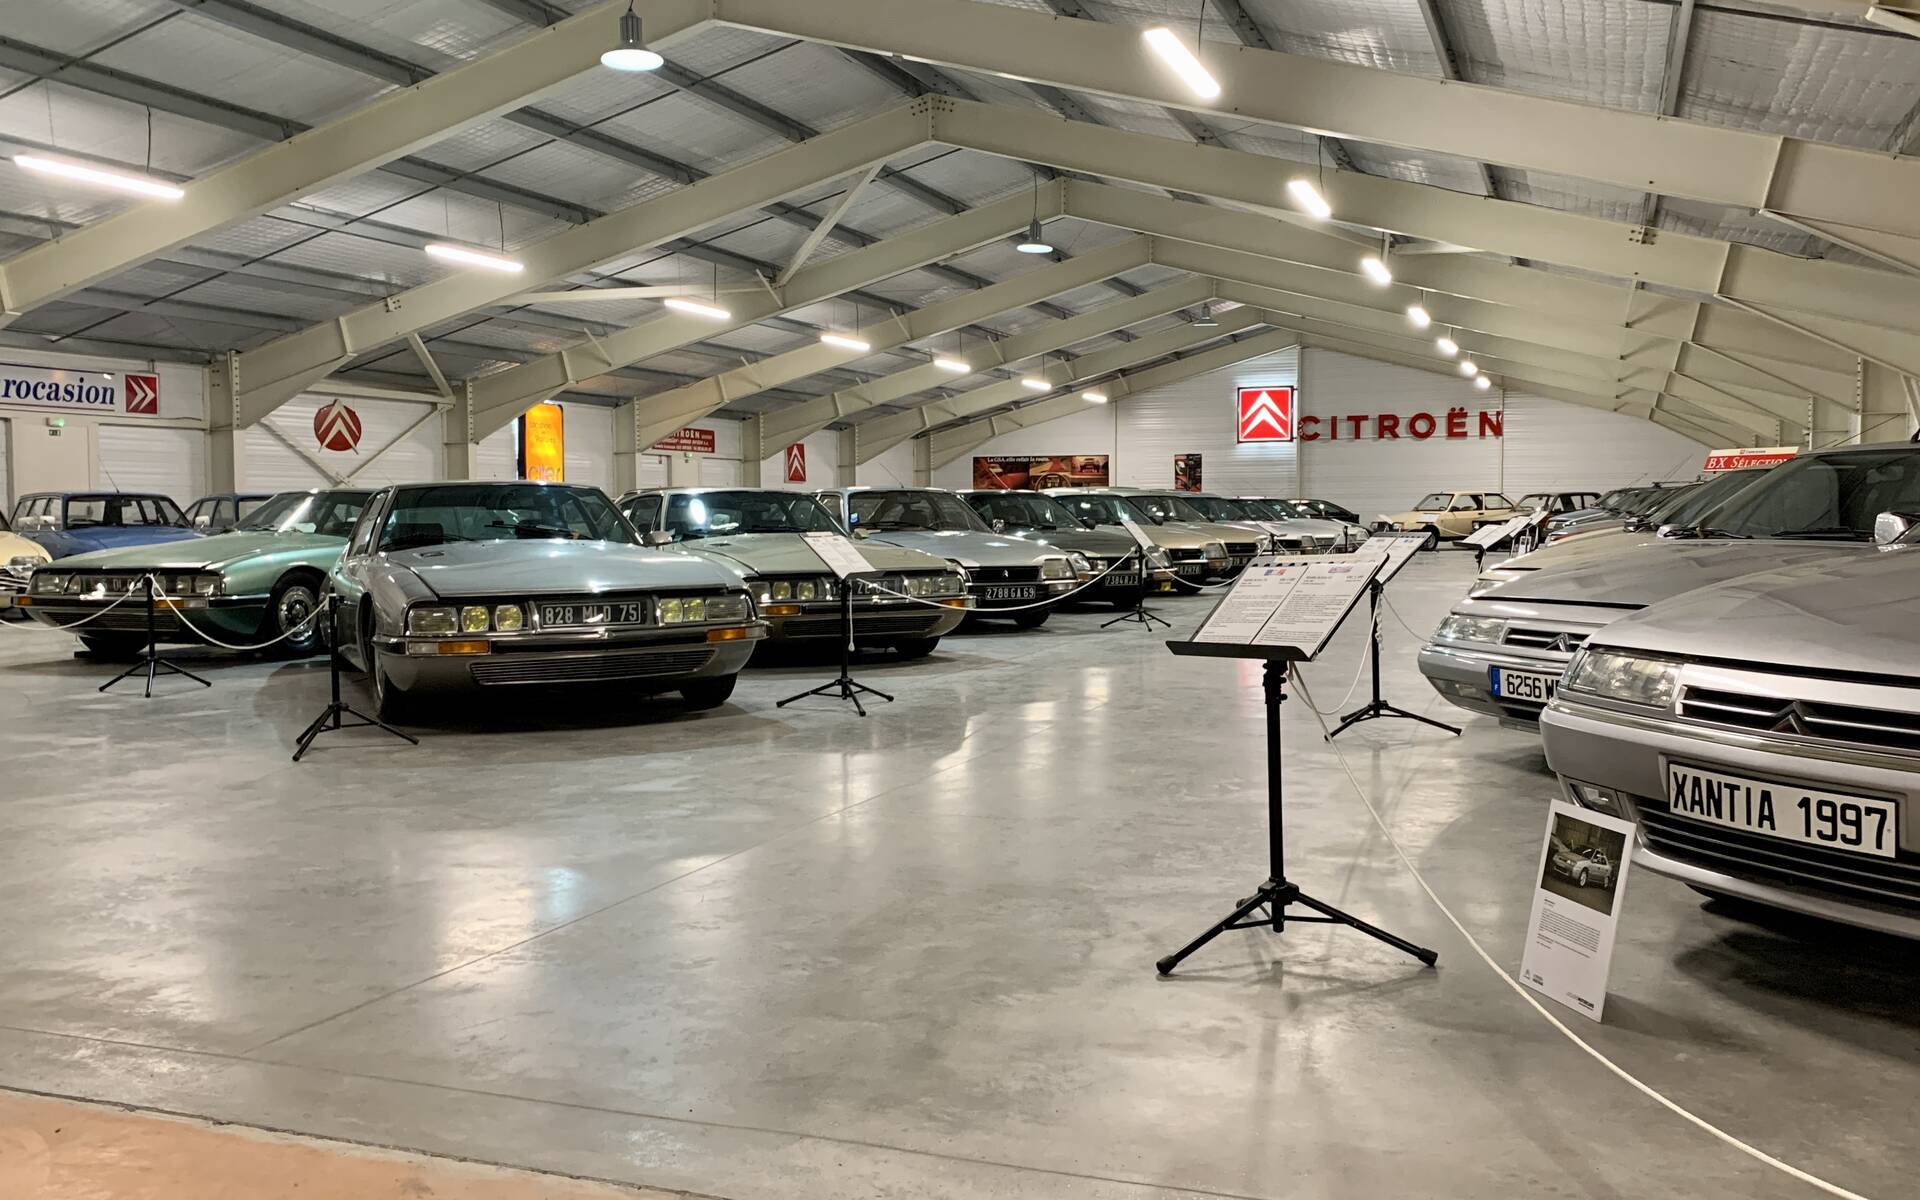 Photos: plus de 100 Citroën d'exception réunies dans un musée en France 543098-photos-plus-de-100-citroen-d-exception-reunies-dans-un-musee-en-france